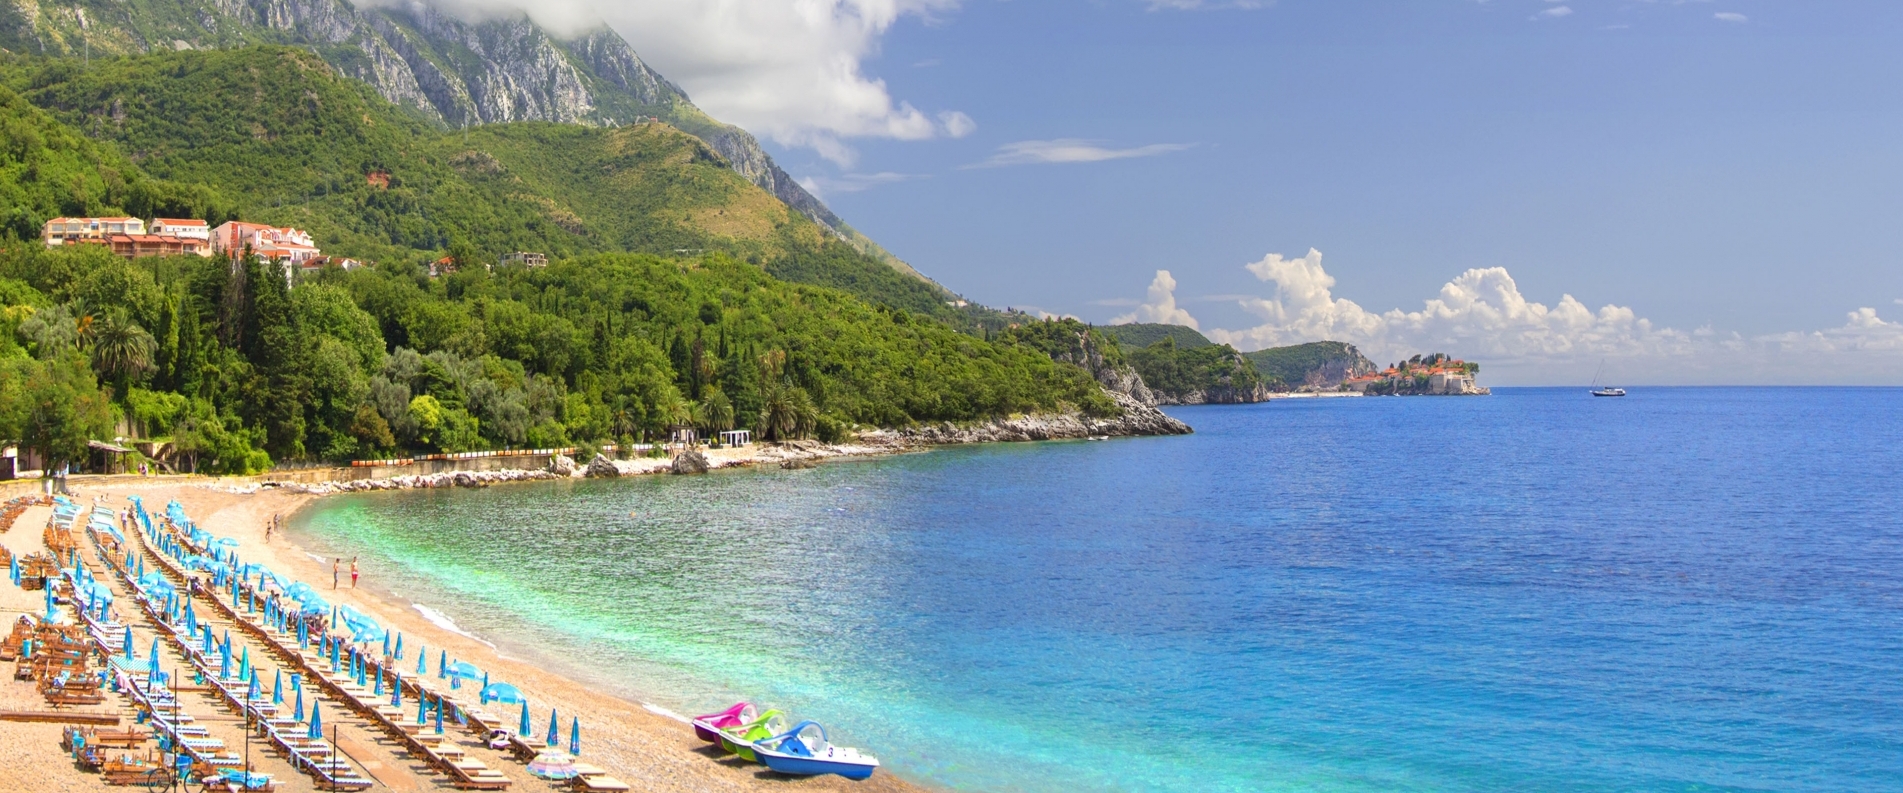 ТОП 10: Пляжи Черногории